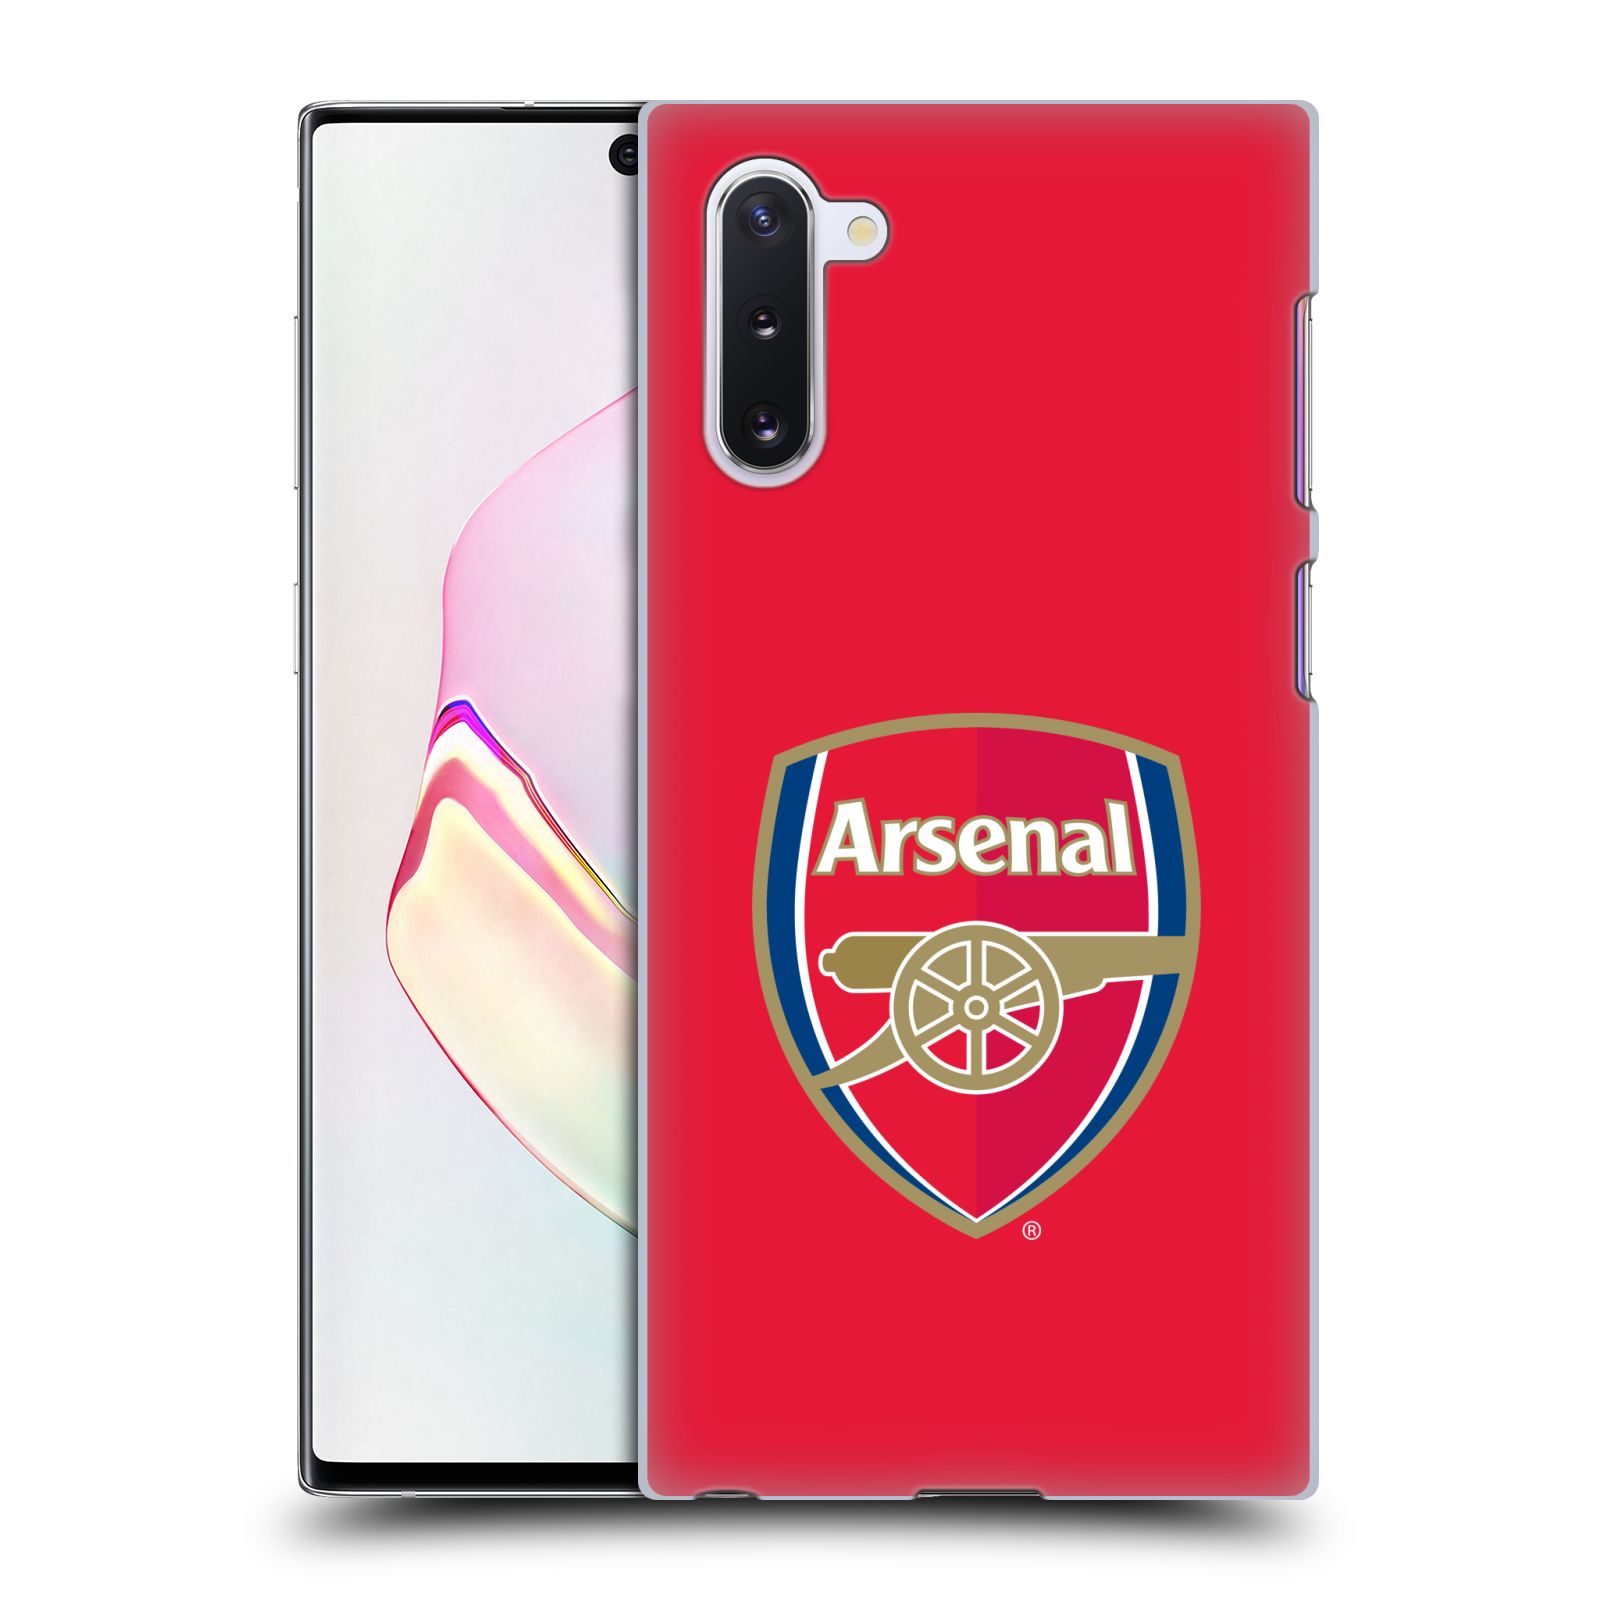 Pouzdro na mobil Samsung Galaxy Note 10 - HEAD CASE - Fotbalový klub Arsenal znak barevný červené pozadí